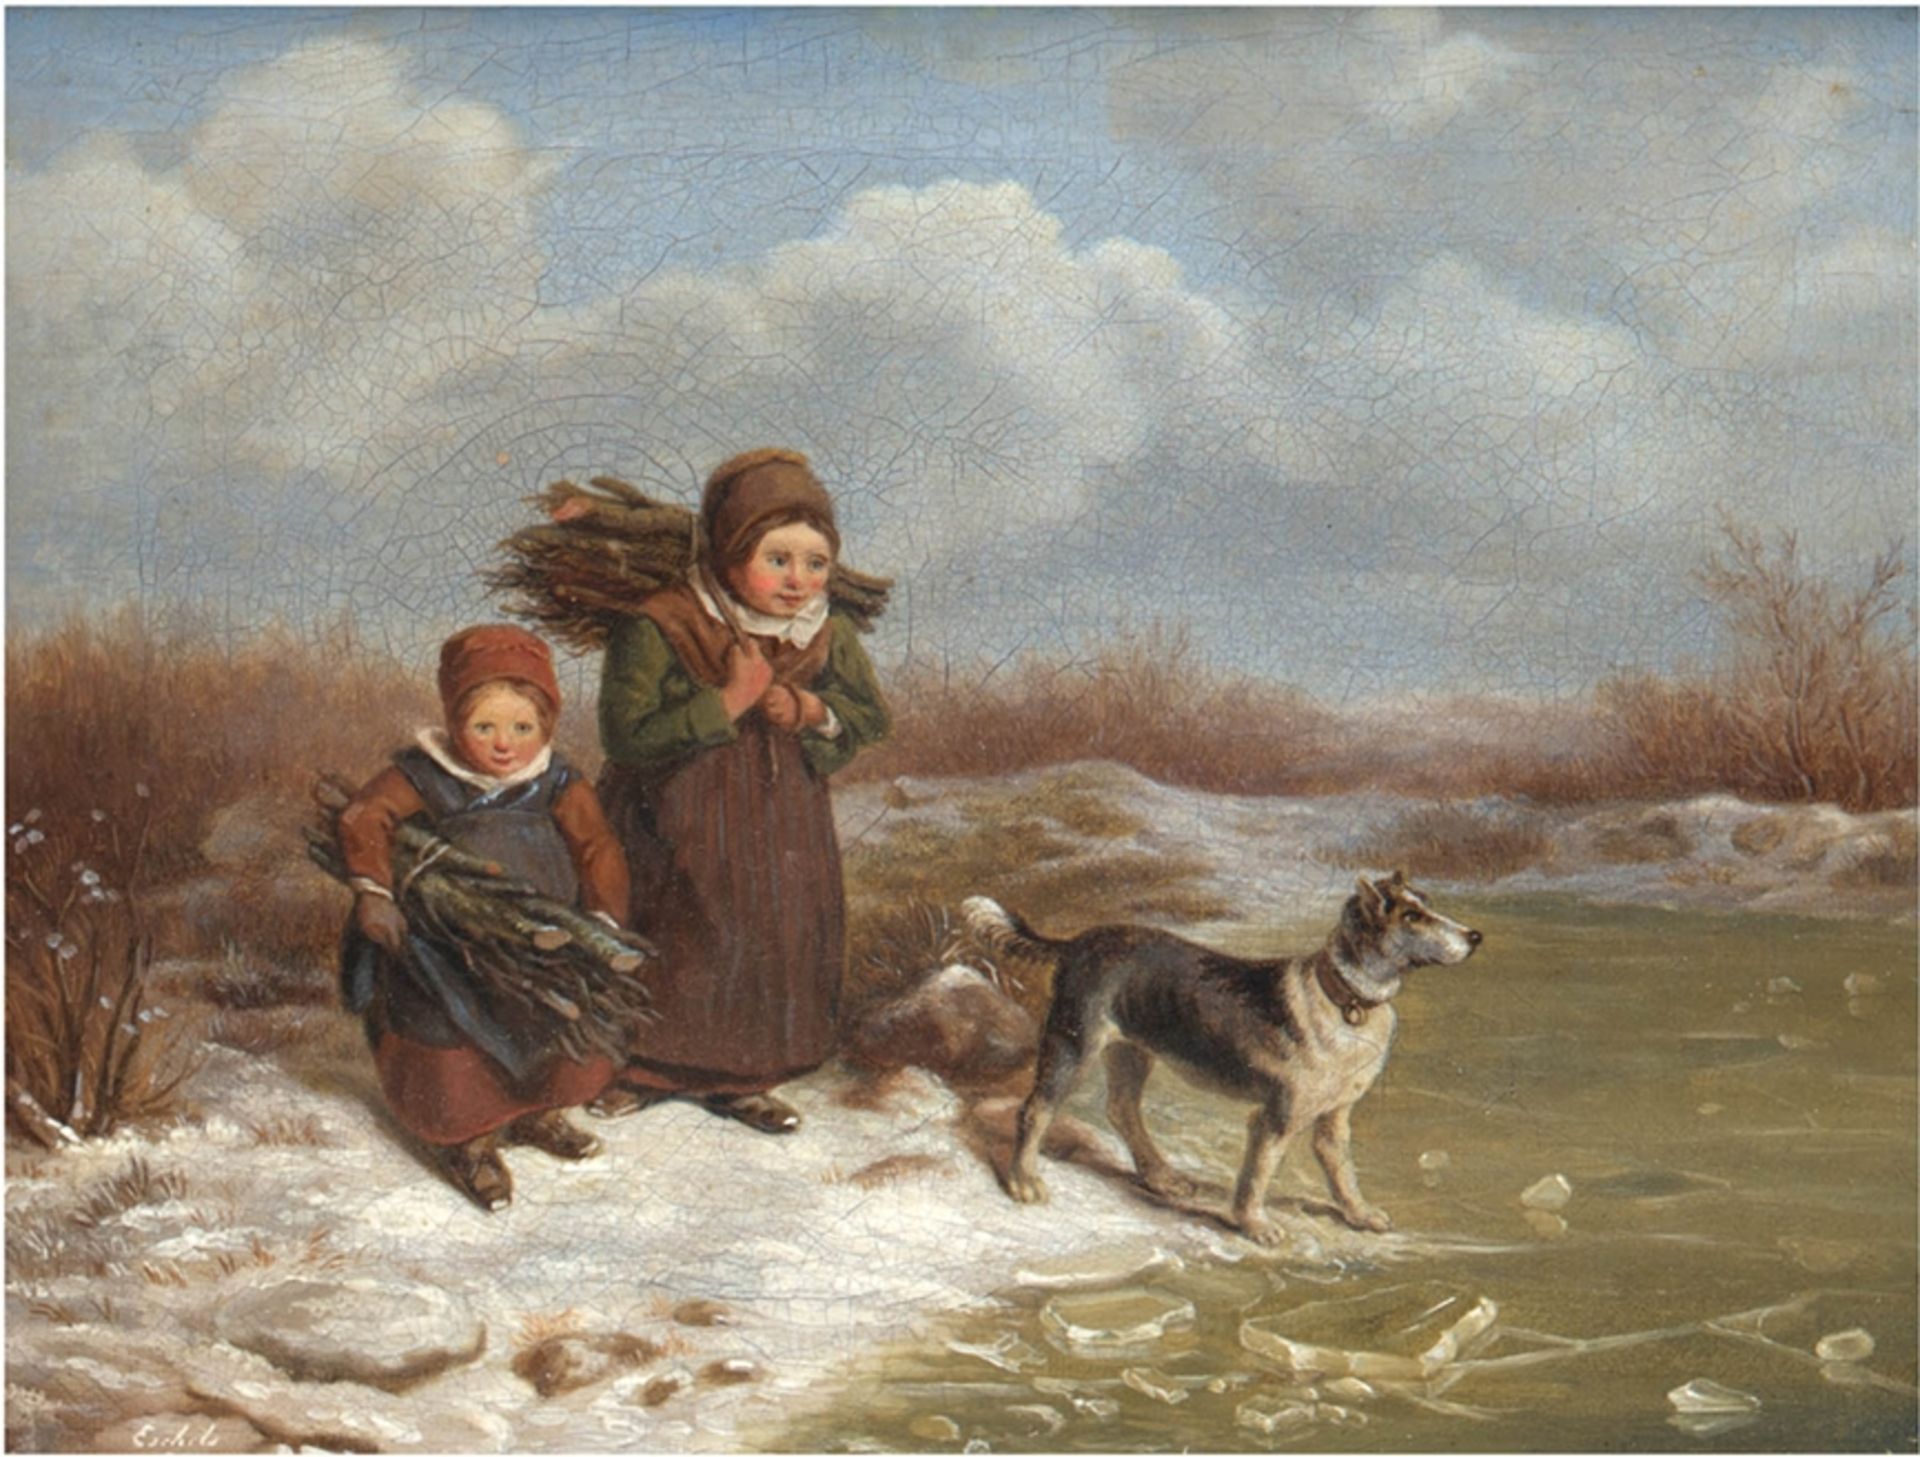 "Winterlandschaft mit zwei Kindern und Hund am Seeufer", Öl/Lw., sign. "Esch... ?" und dat. 1854 u.